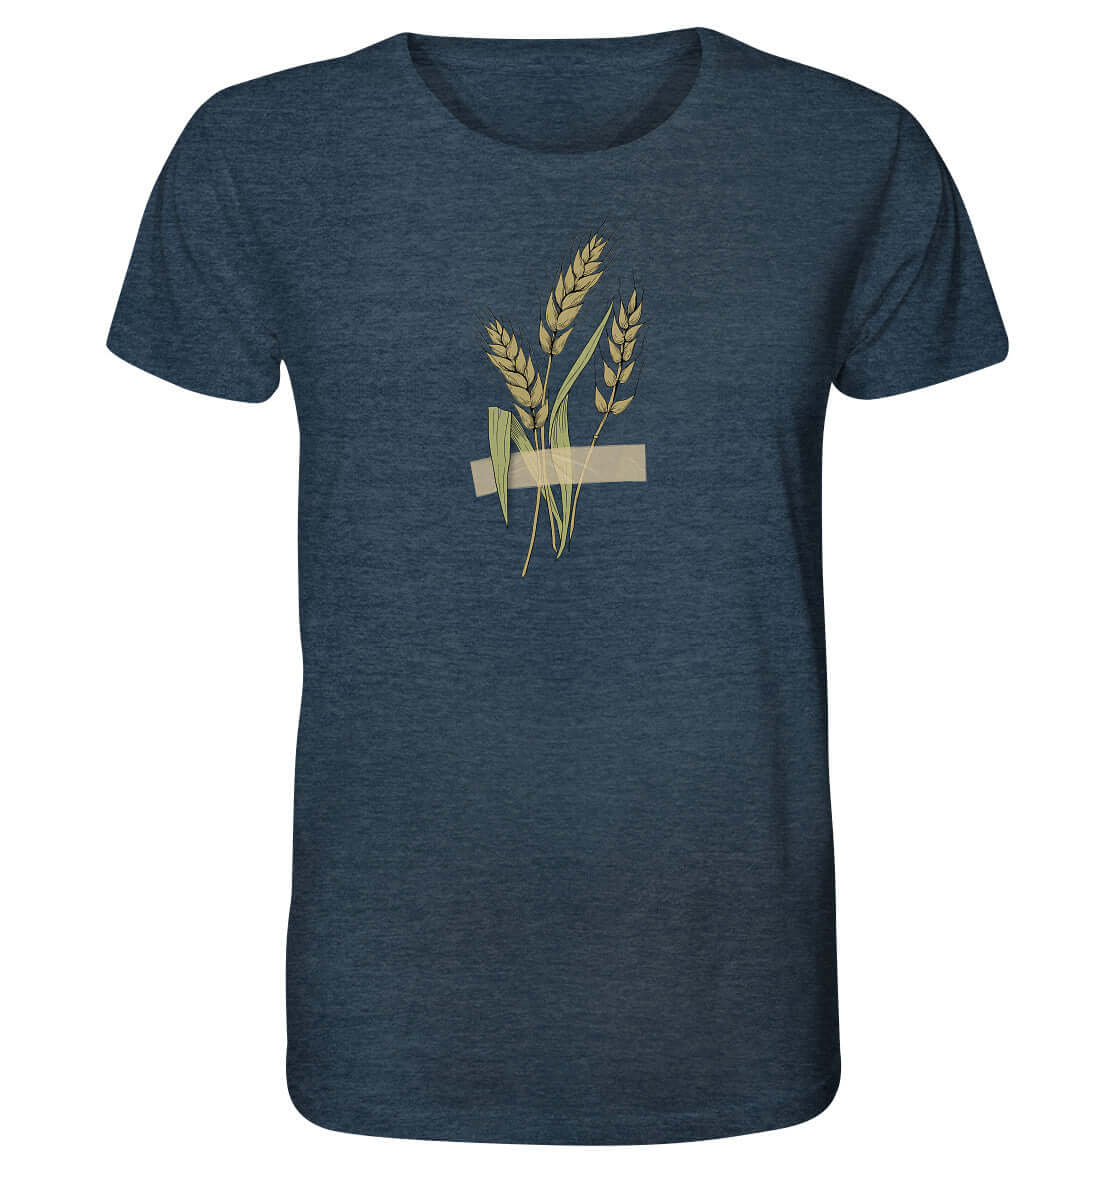 Shirt Ährenmann Agrar Acker Shirt Weizen Landwirt Shirt Landwirtschaft Dorfkram® navy blau